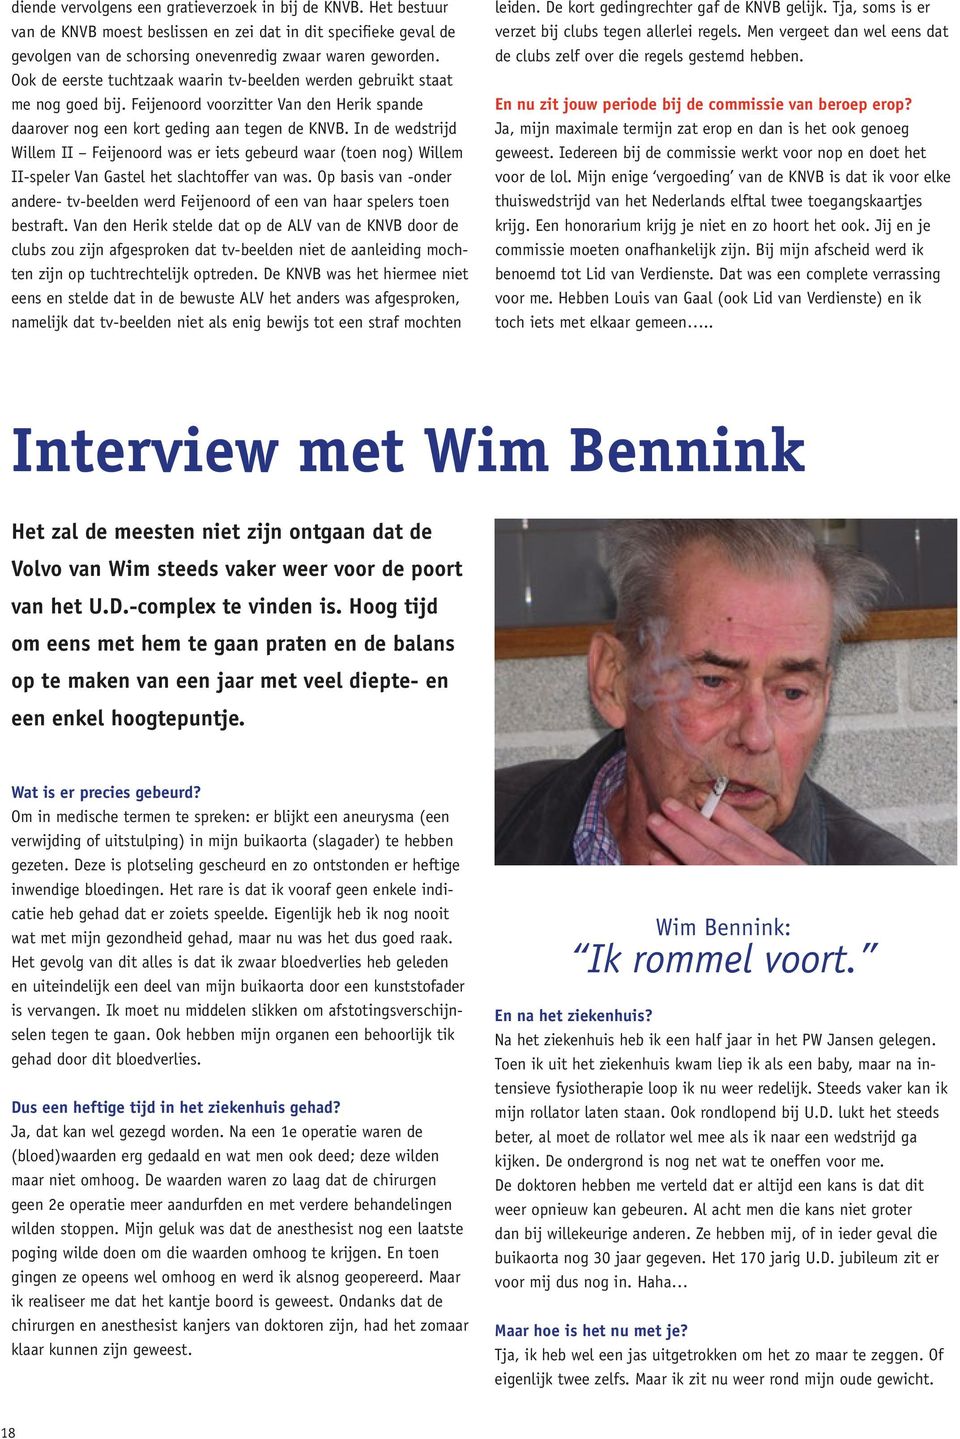 In de wedstrijd Willem II Feijenoord was er iets gebeurd waar (toen nog) Willem II-speler Van Gastel het slachtoffer van was.